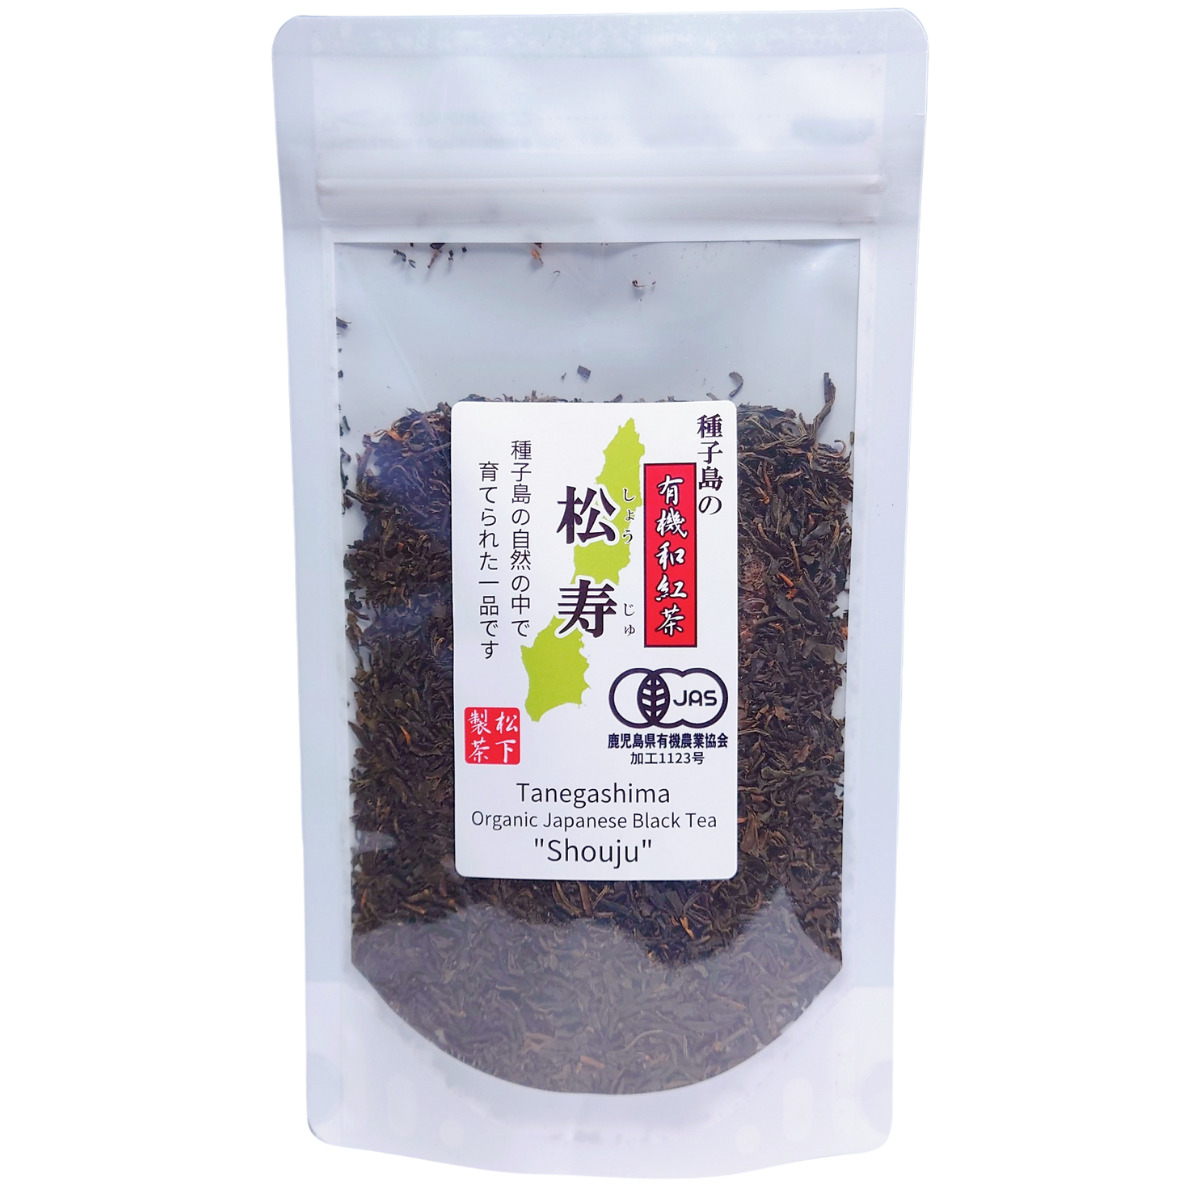 【希少品種】種子島の有機和紅茶『松寿(しょうじゅ)』 茶葉(リーフ) 60g 松下製茶